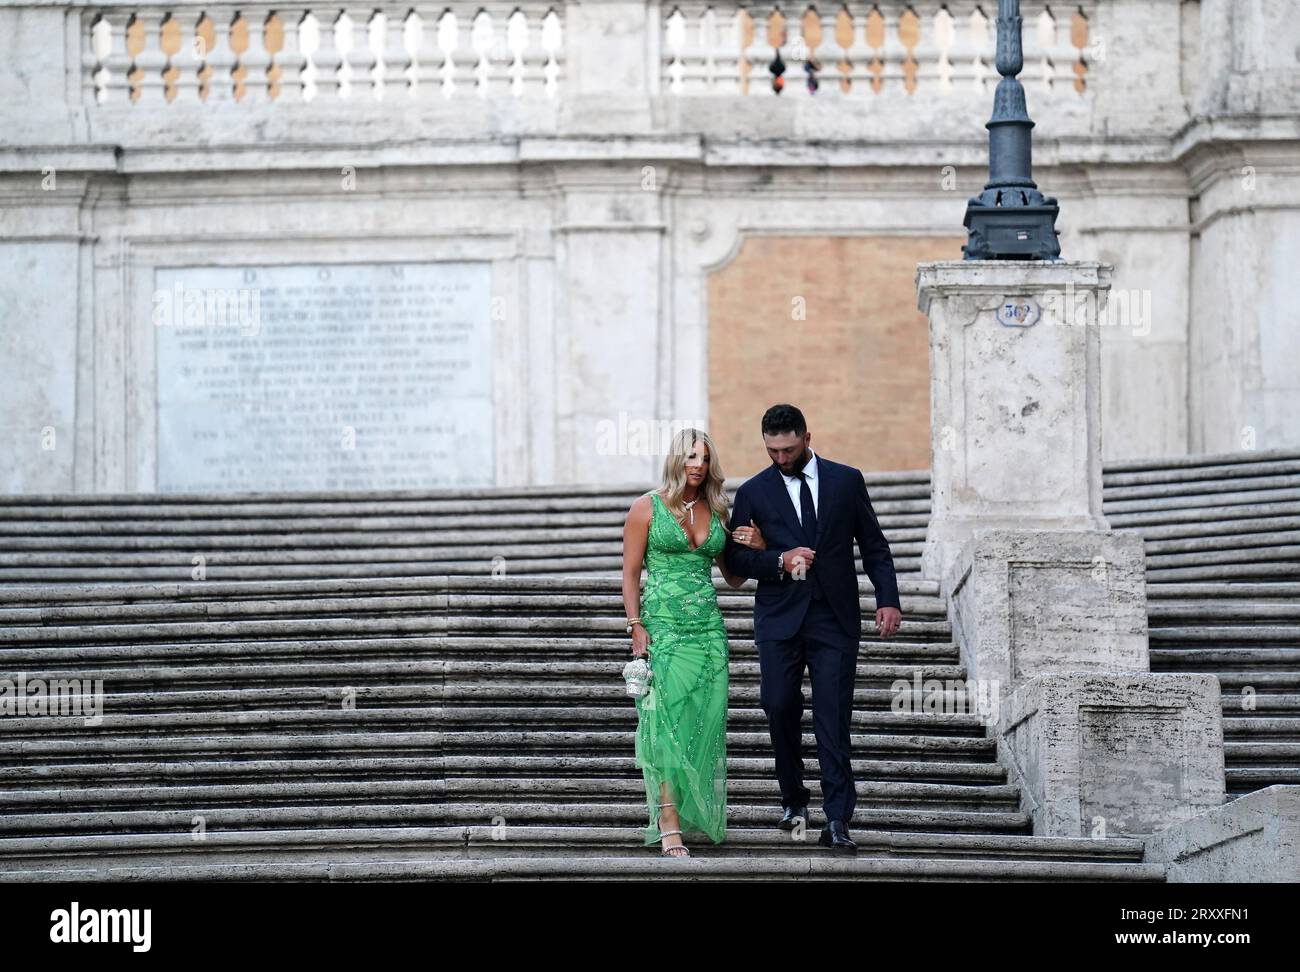 Il team europeo Jon Rahm (a destra) e il partner Kelley Cahill alla scalinata di Piazza di Spagna di Roma, in vista della Ryder Cup 2023. Data foto: Mercoledì 27 settembre 2023. Foto Stock